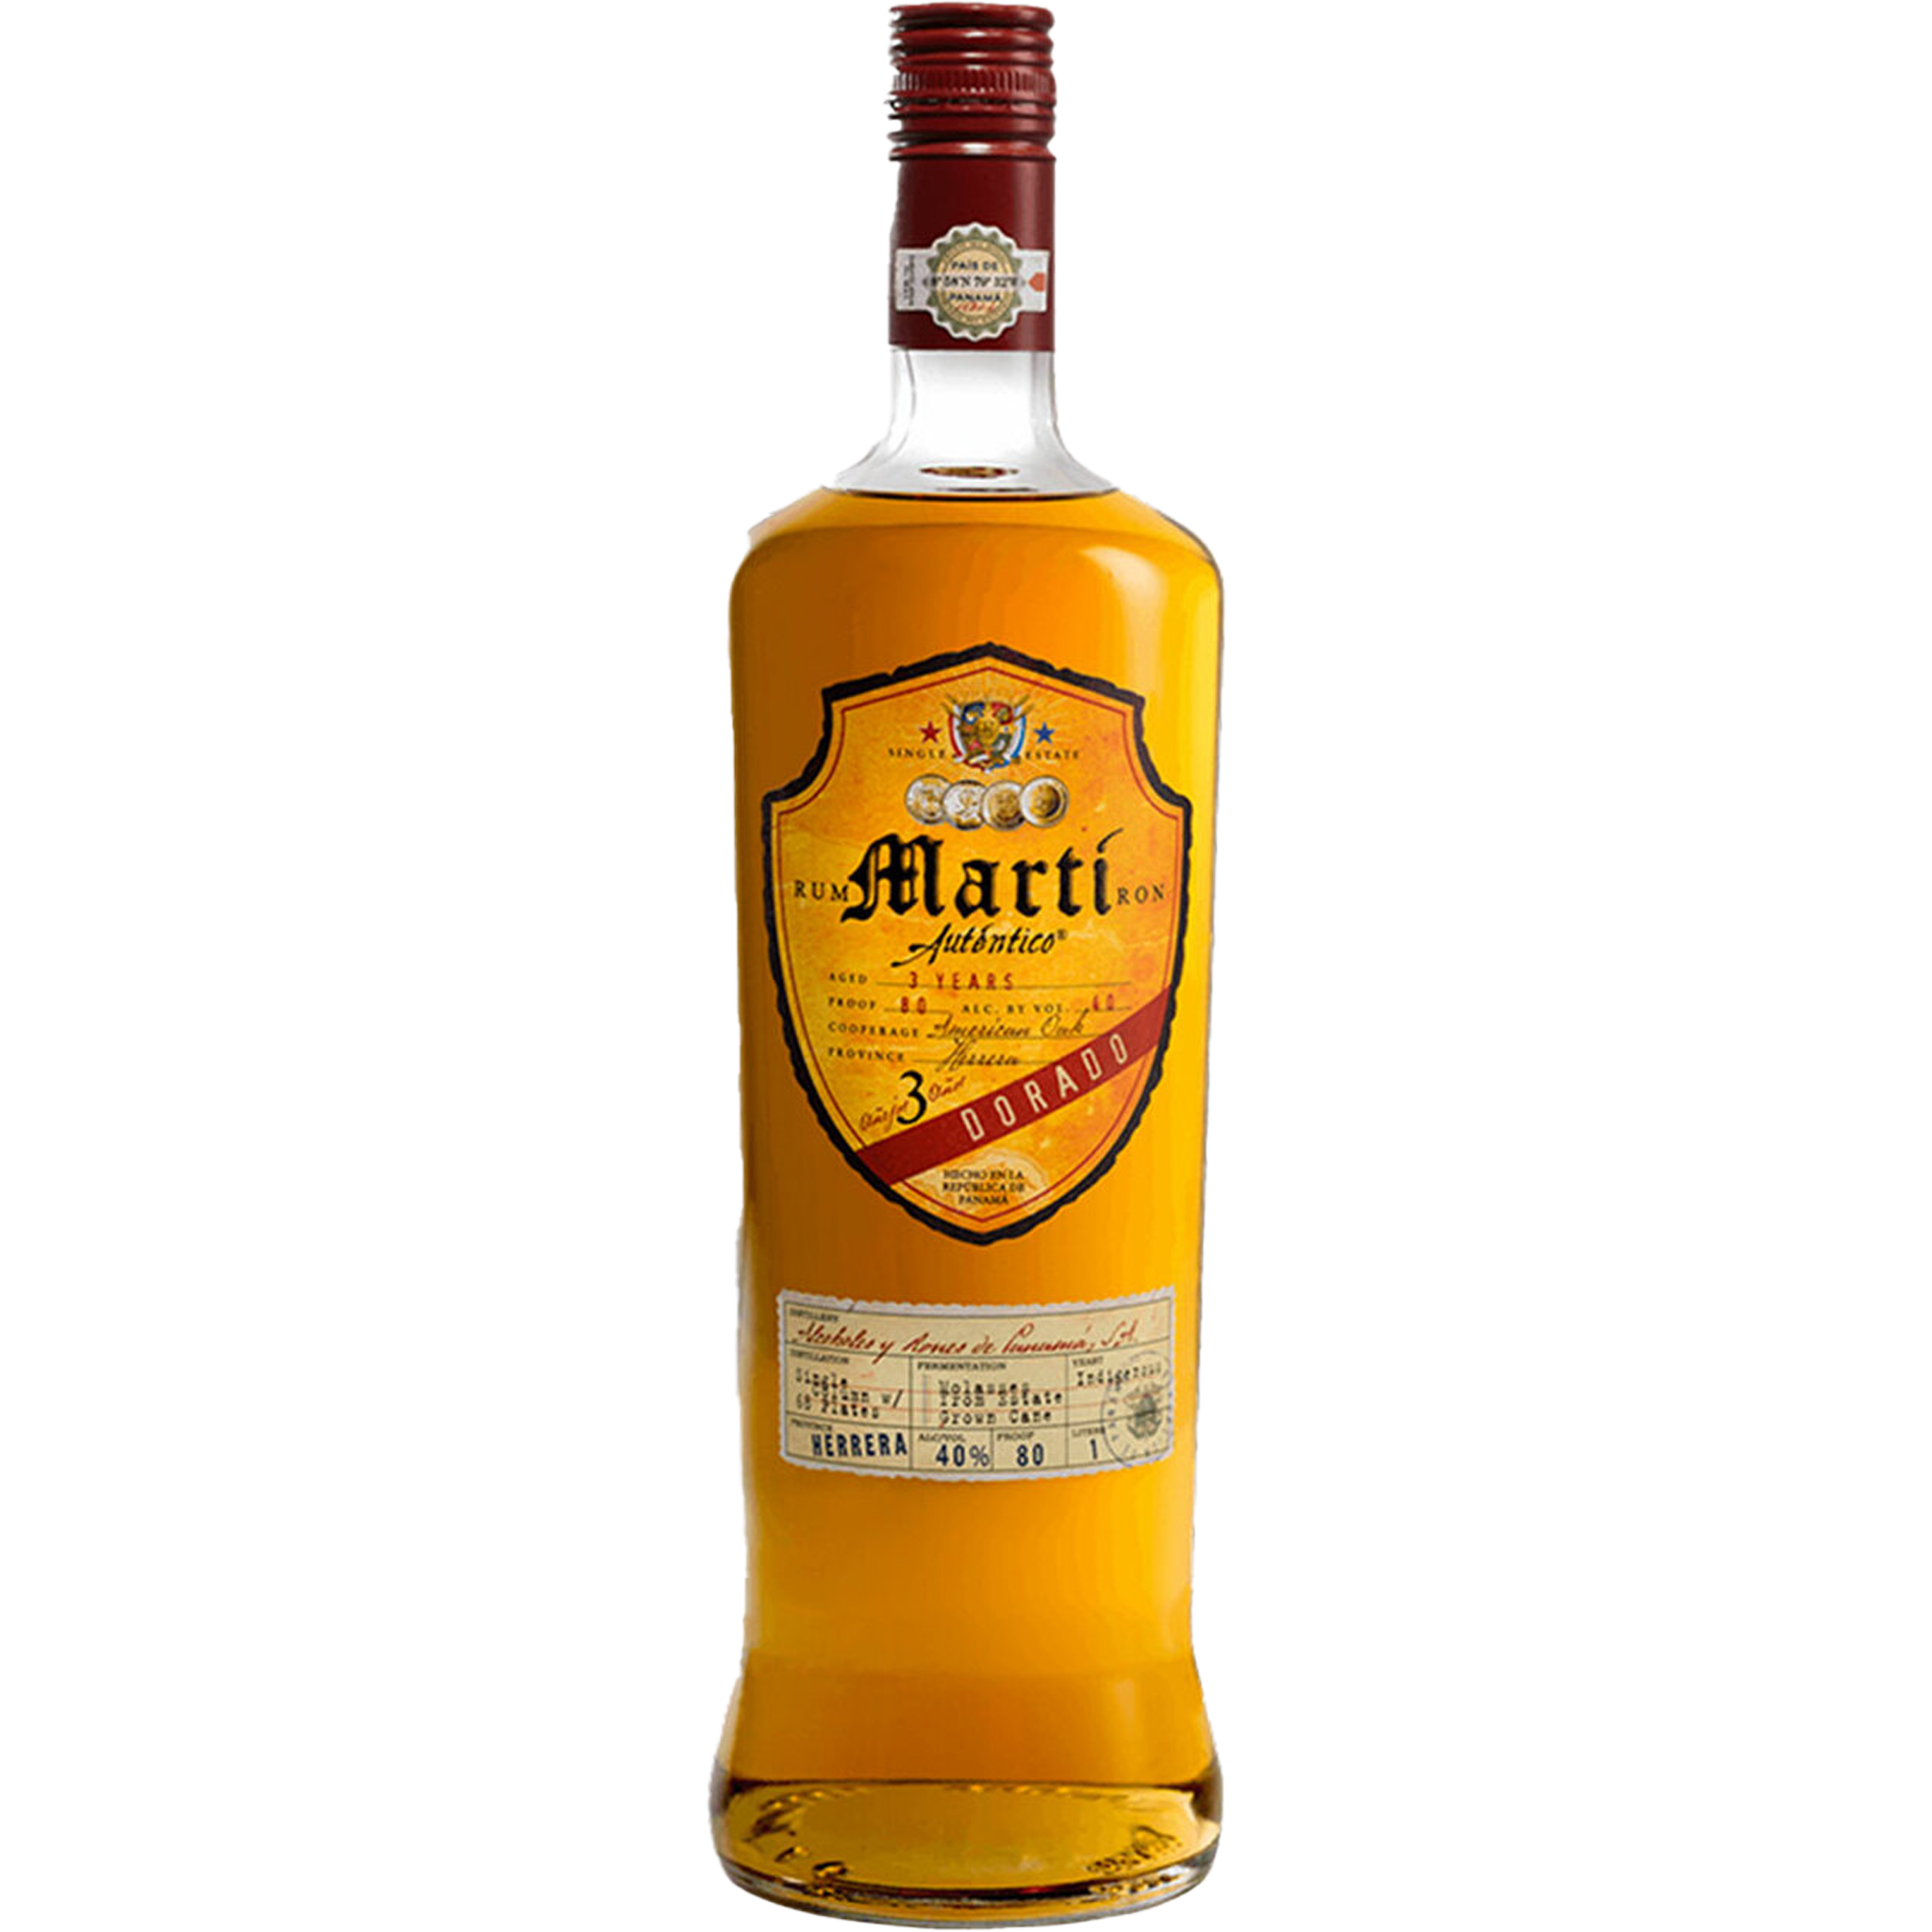 Marti Autentico Rum Dorado